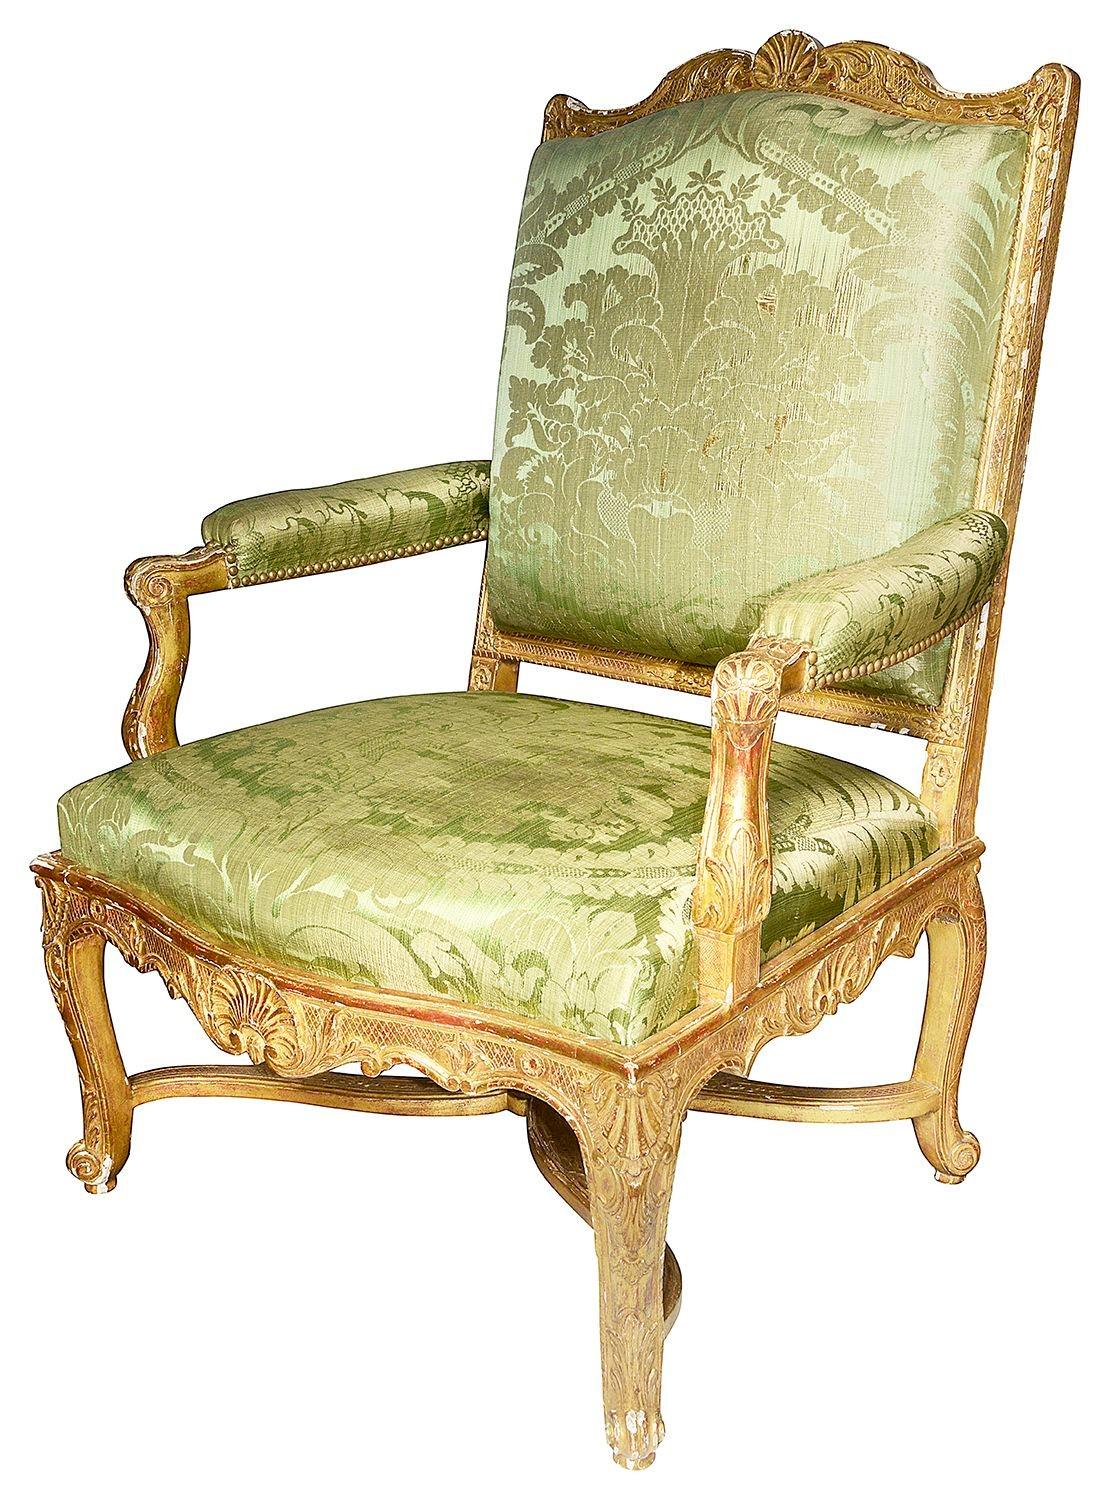 Une paire de fauteuils de salon en bois sculpté et doré de la fin du 19ème siècle, de style Louis XVI, avec une décoration classique de coquilles et de volutes, reposant sur d'élégants pieds cabriole, unis par une traverse en X.


Lot 69 